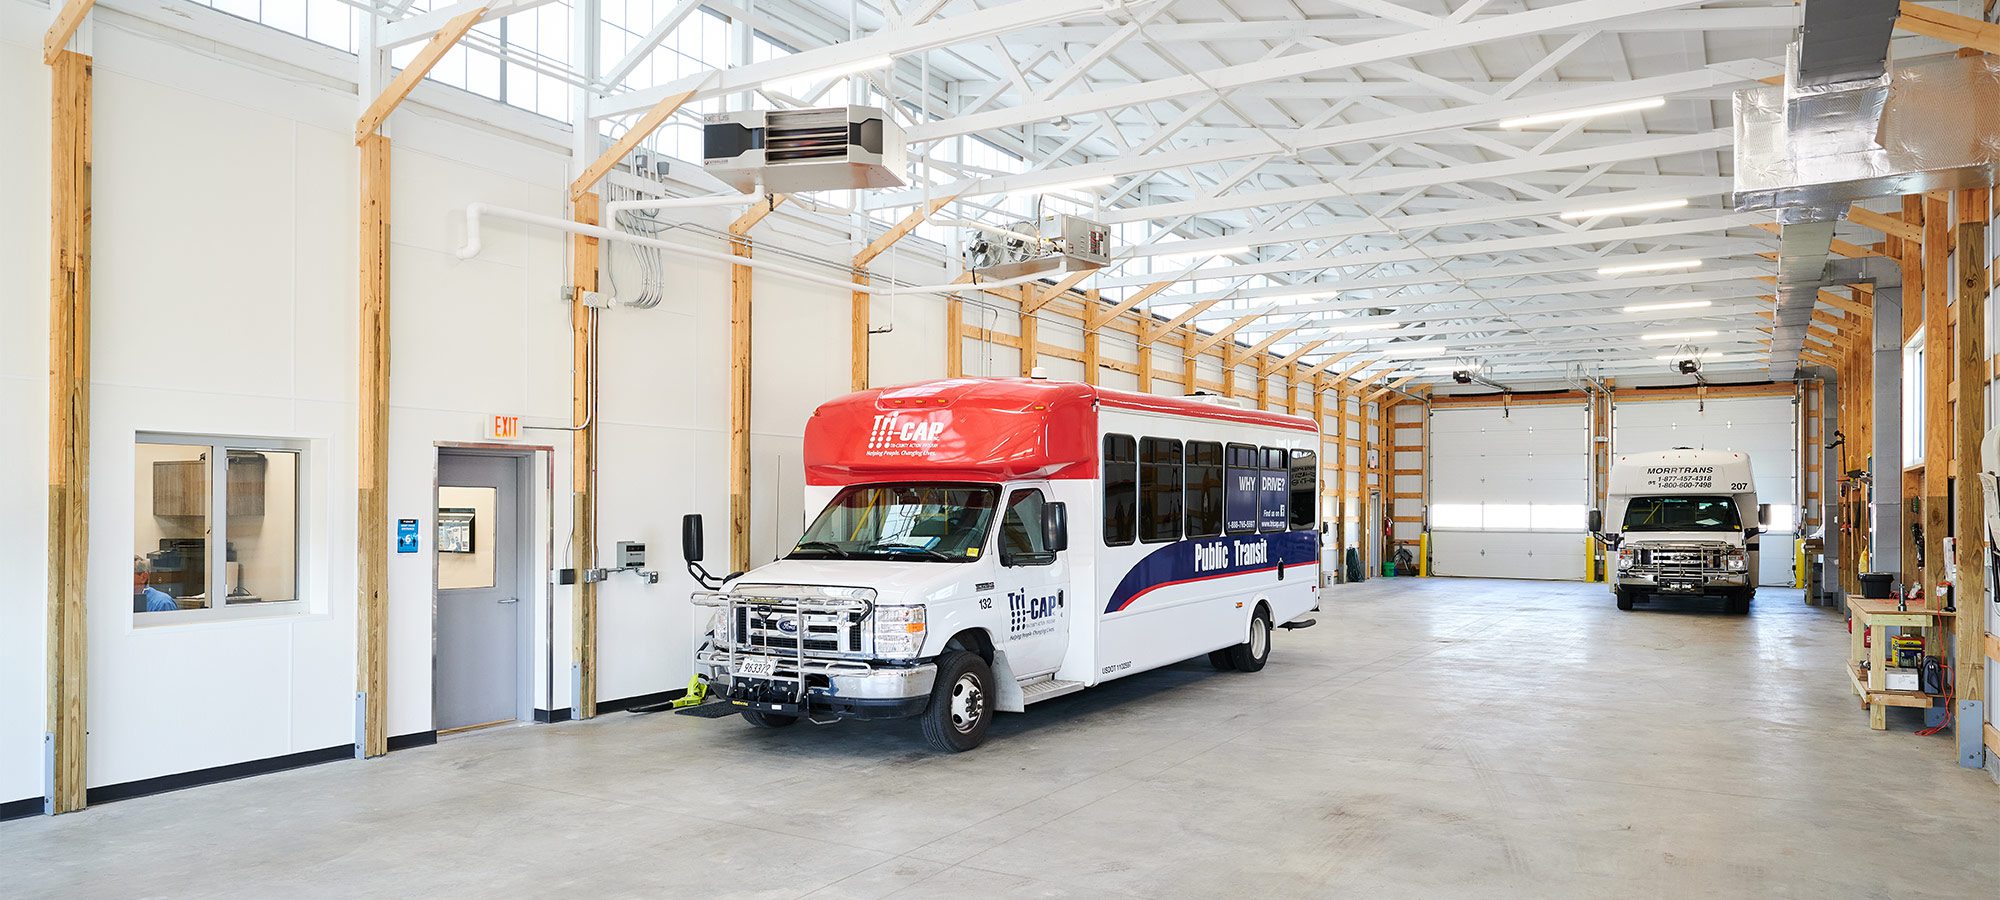 shuttle bus in a high bay garage